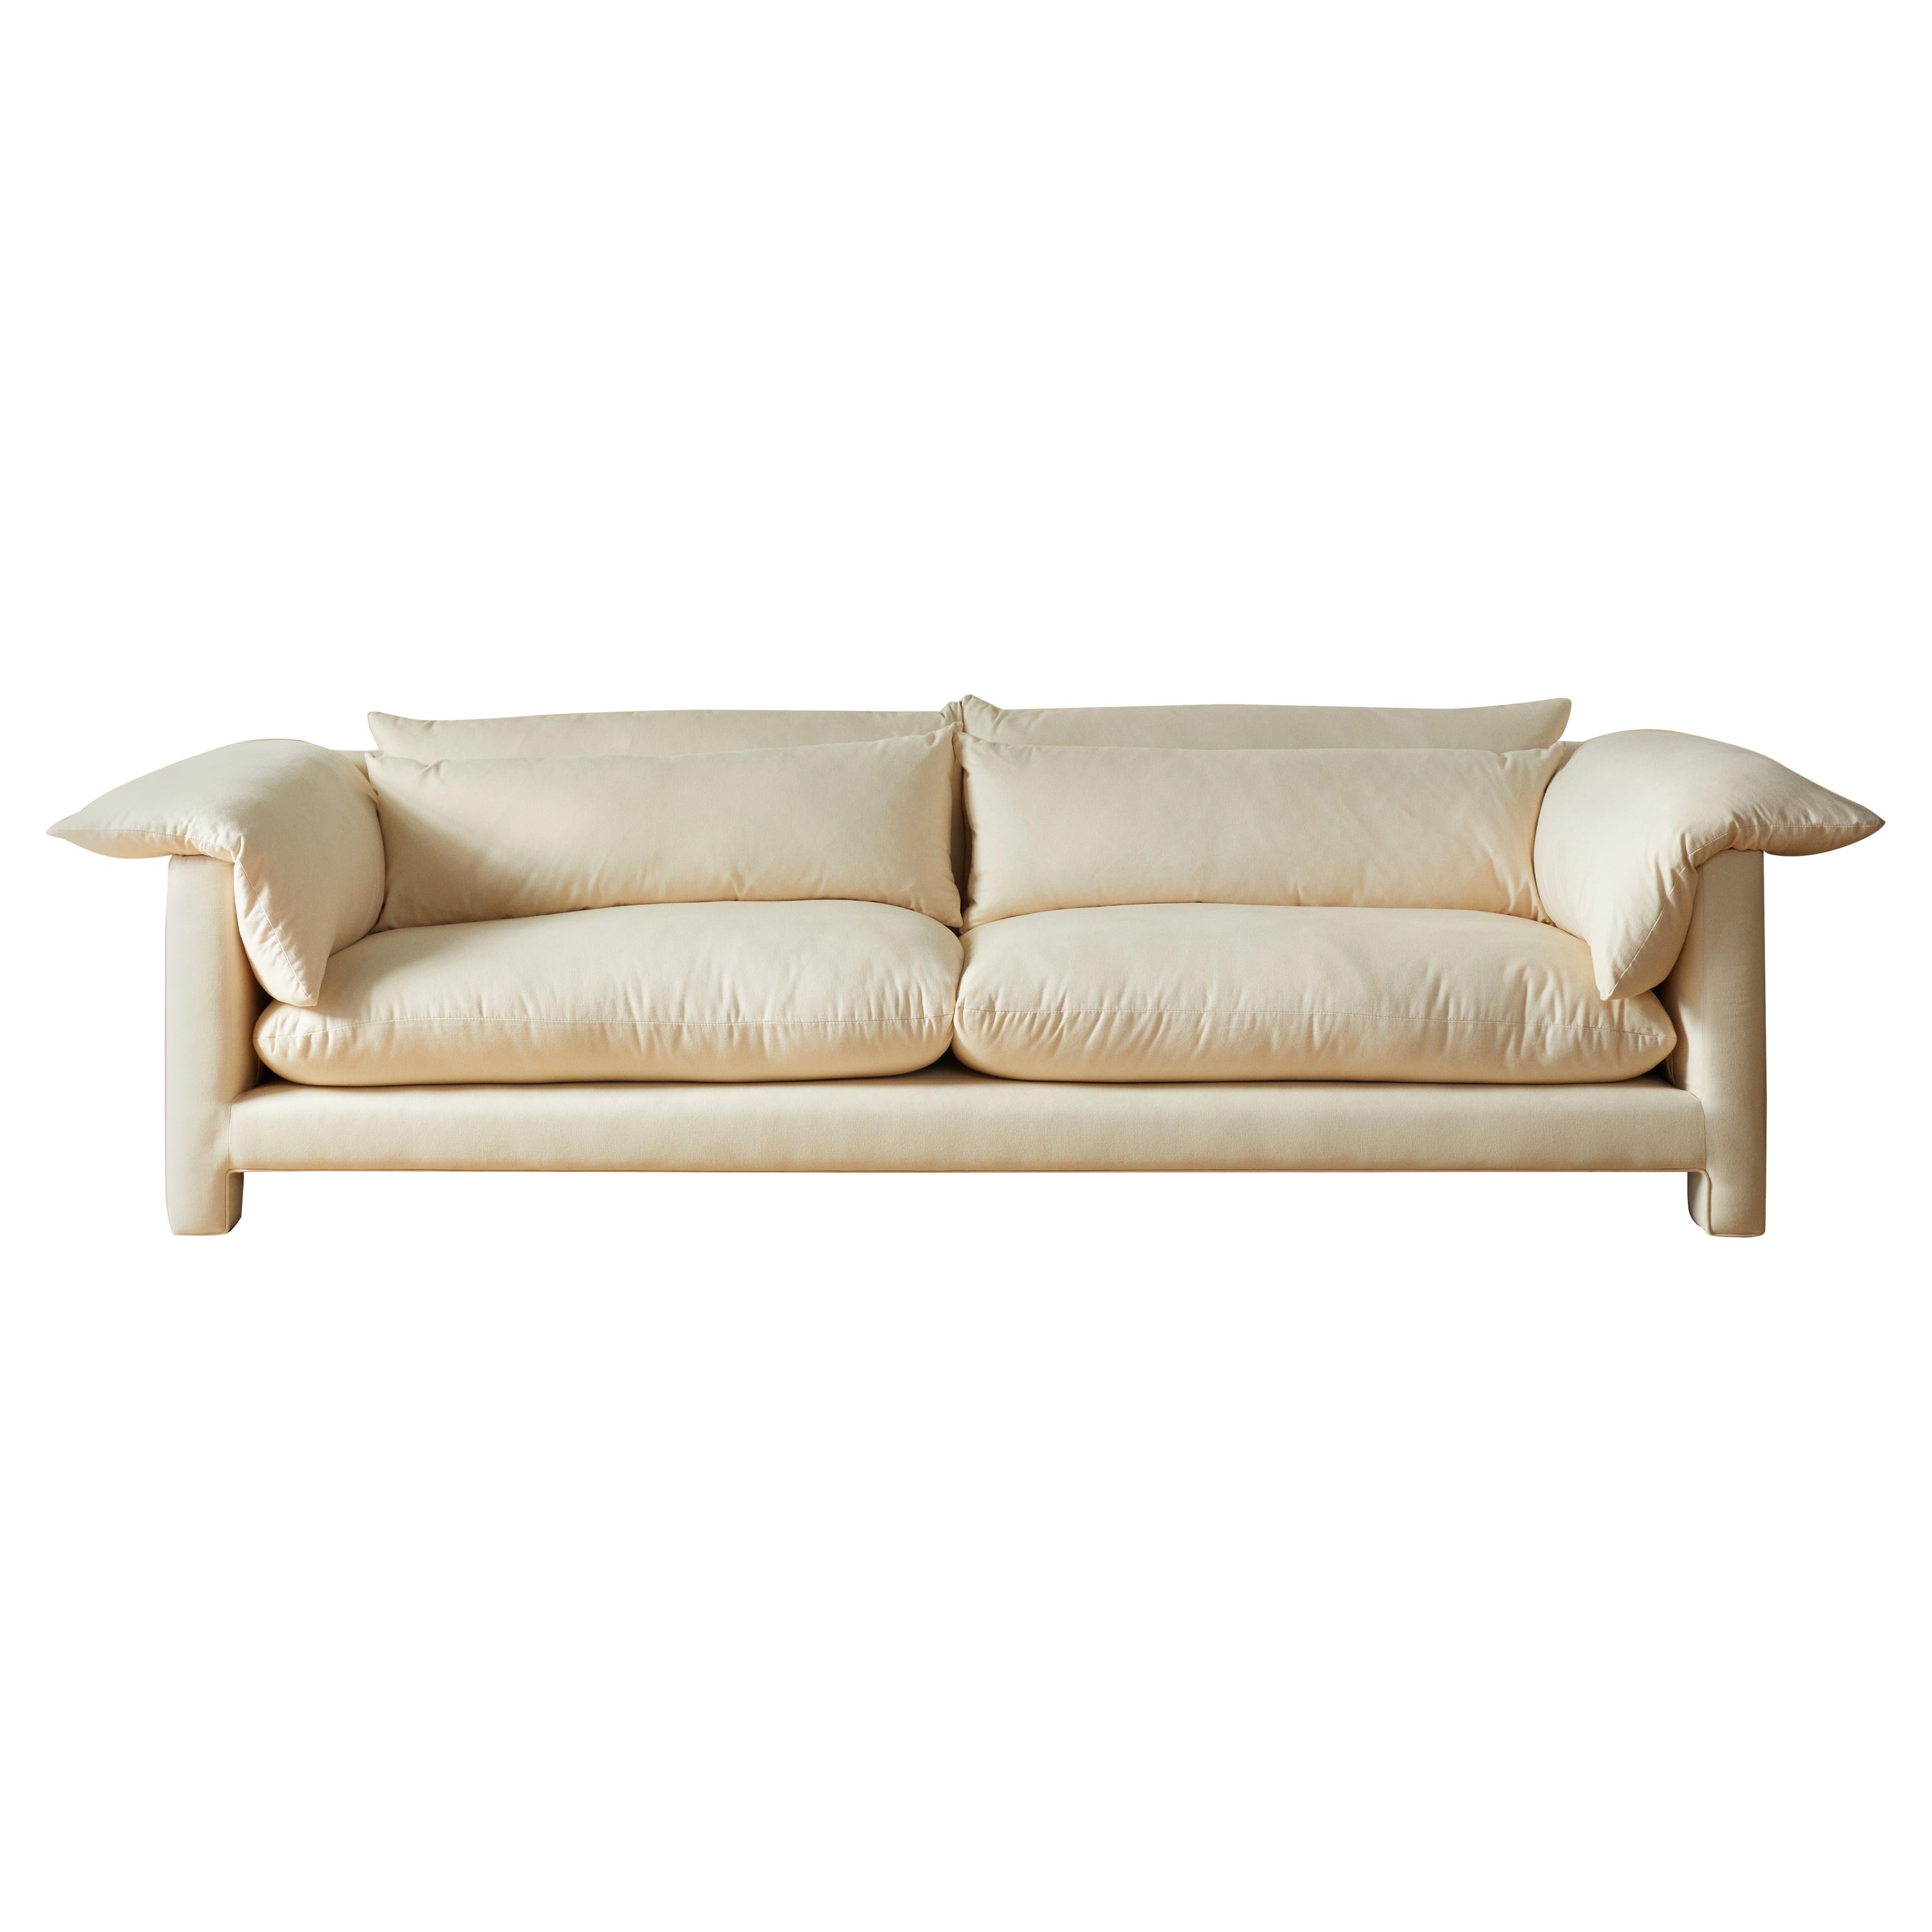 Lemon Sofa - 2 For Sale on 1stDibs | lemon couch, sofa lemon